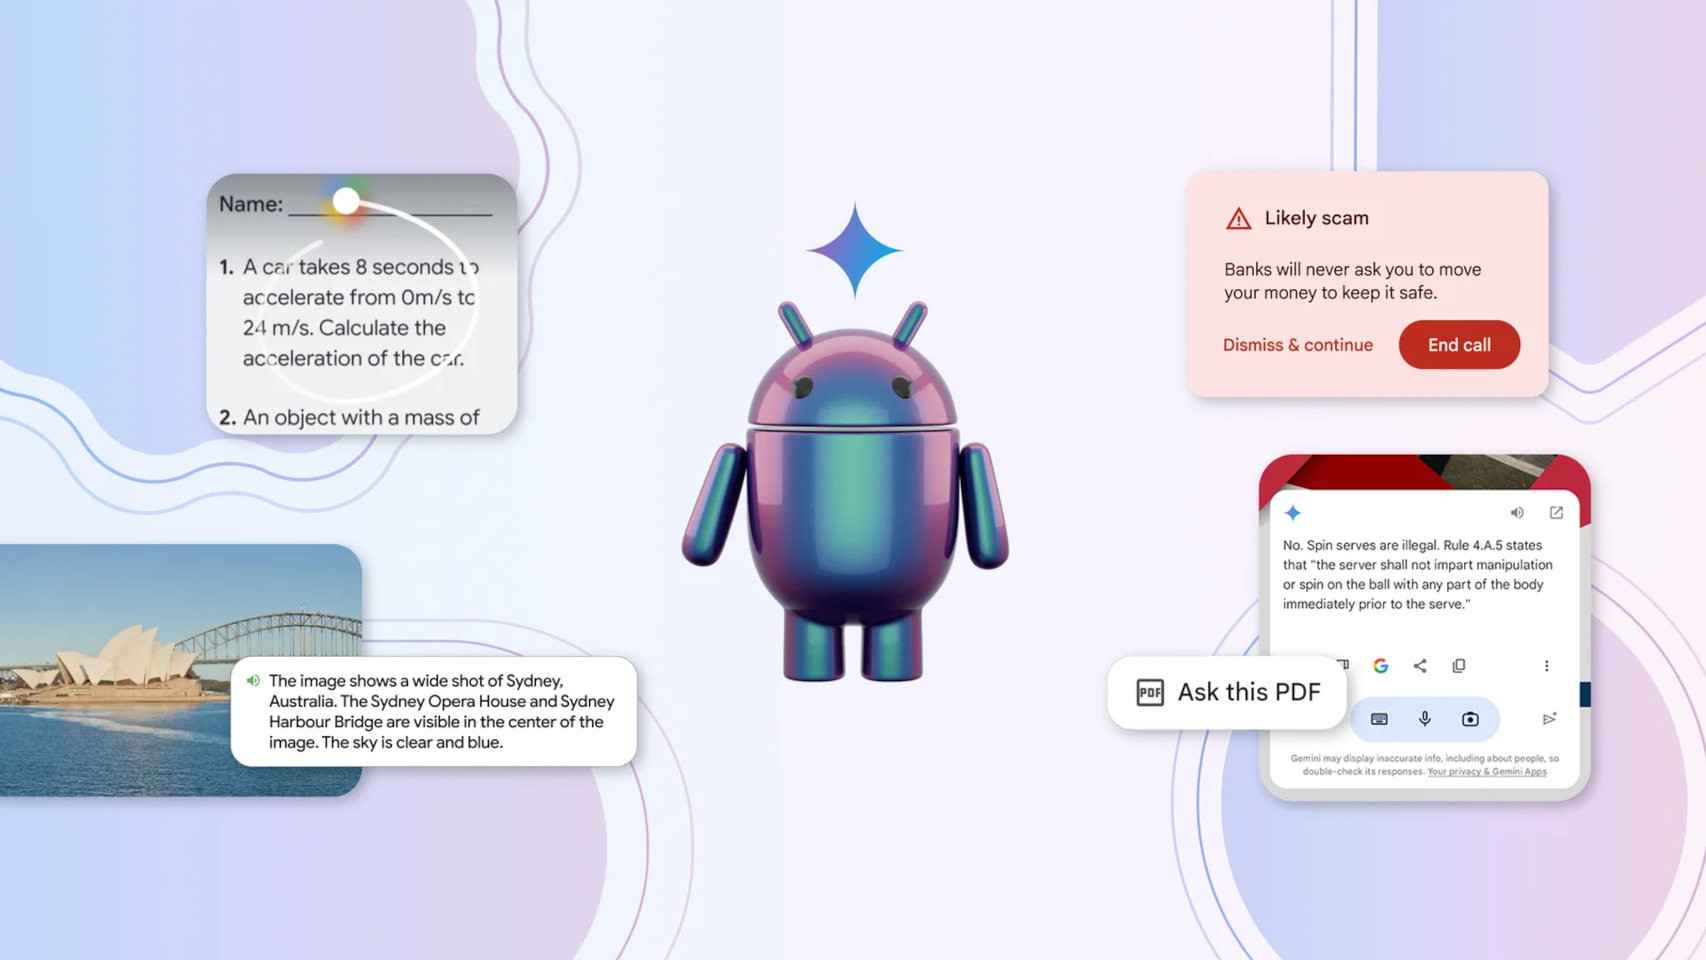 Funciones de Inteligencia Artificial en Android